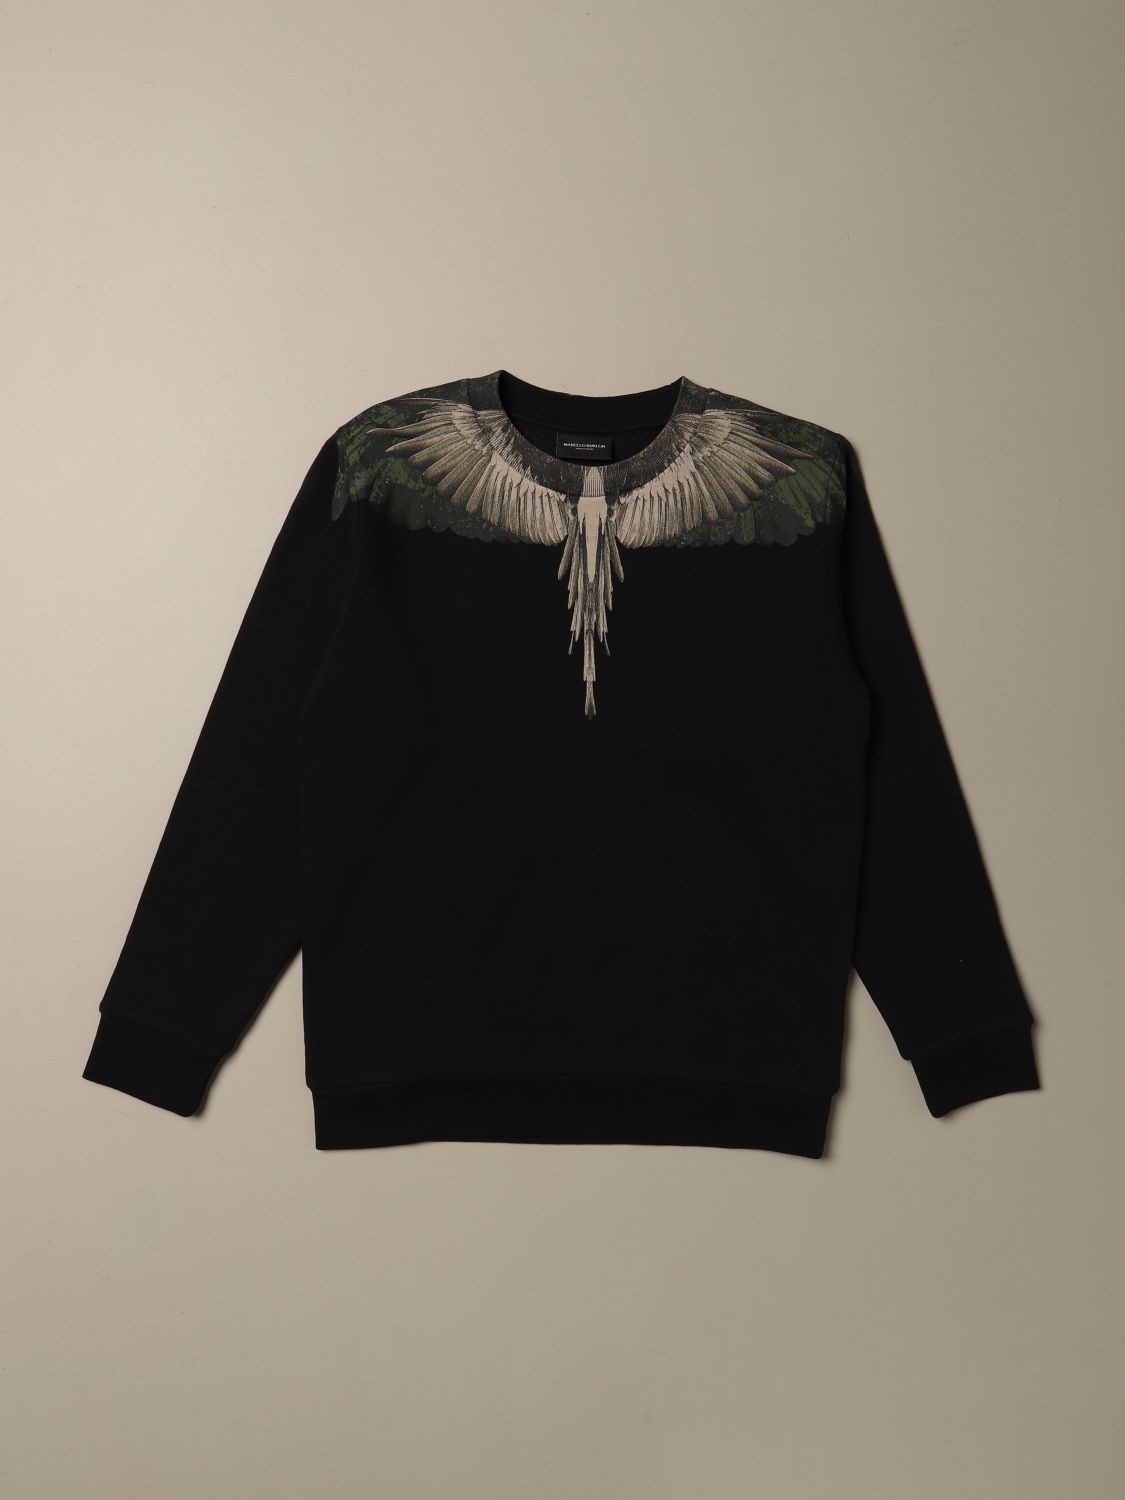 Kurv præmedicinering målbar Marcelo Burlon Outlet: sweatshirt with wings print | Sweater Marcelo Burlon  Kids Black | Sweater Marcelo Burlon 2009 0020 GIGLIO.COM